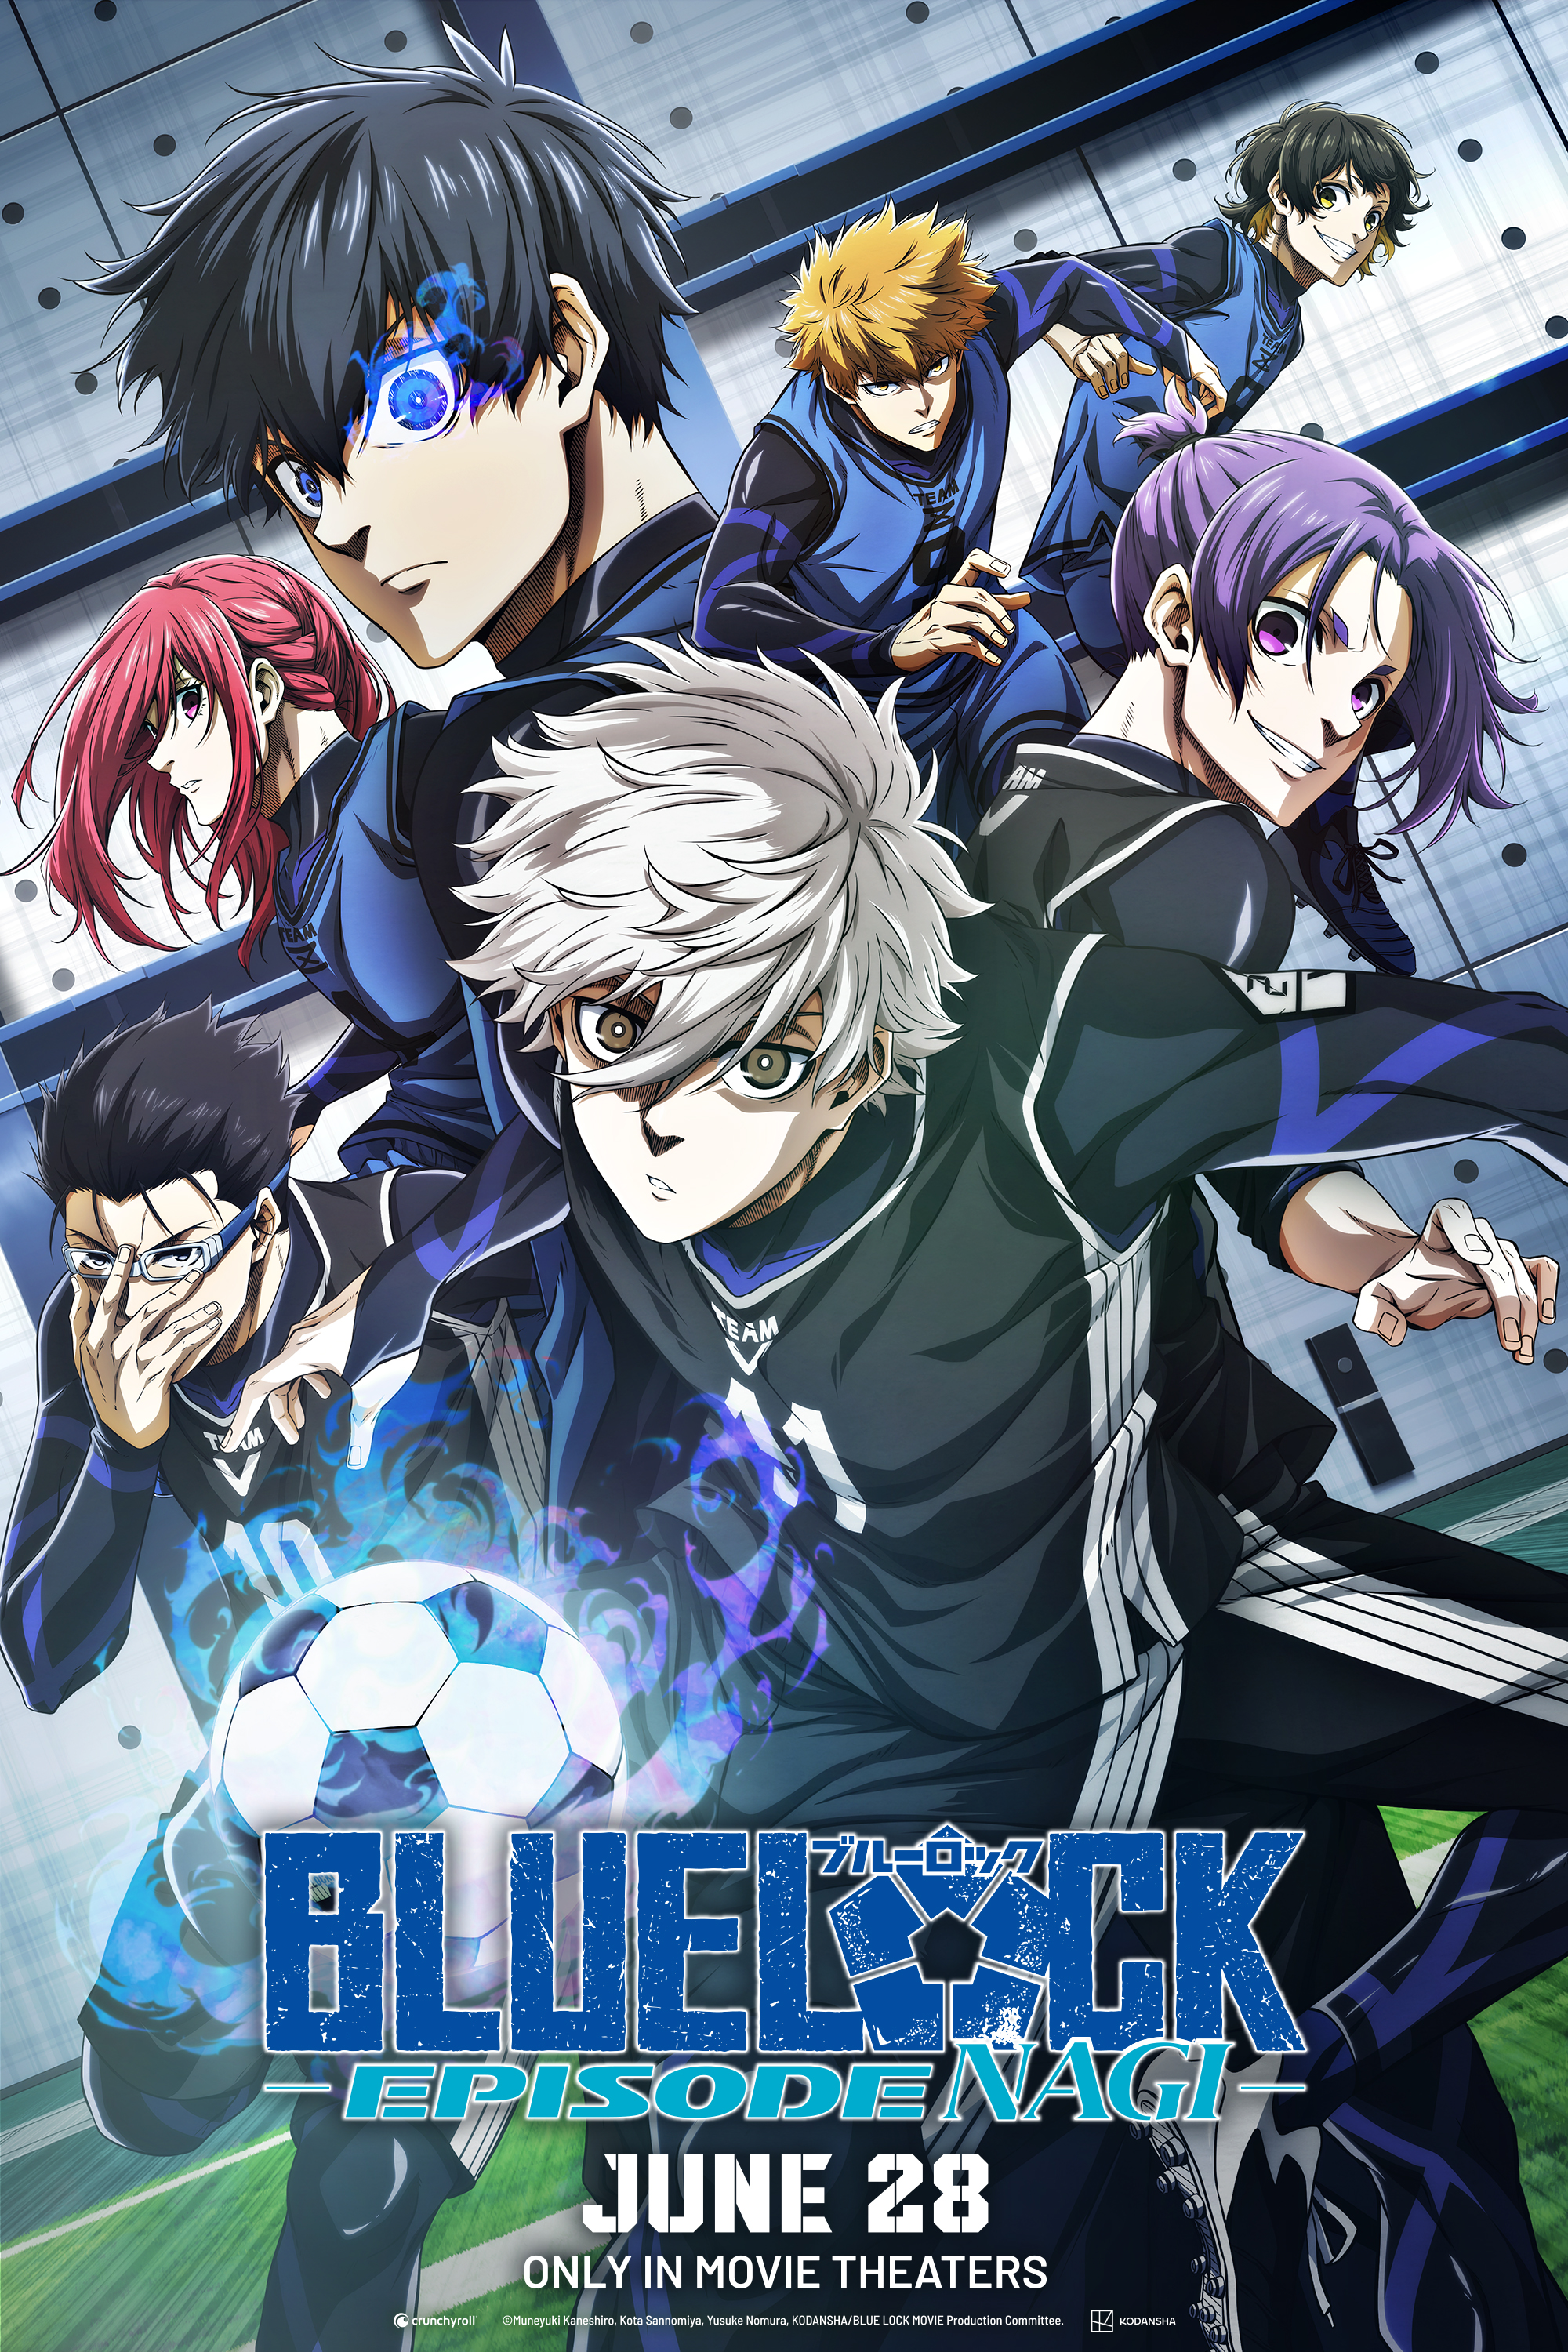 Blue Lock -Episode Nagi- (劇場版ブルーロック -Episode 凪-)